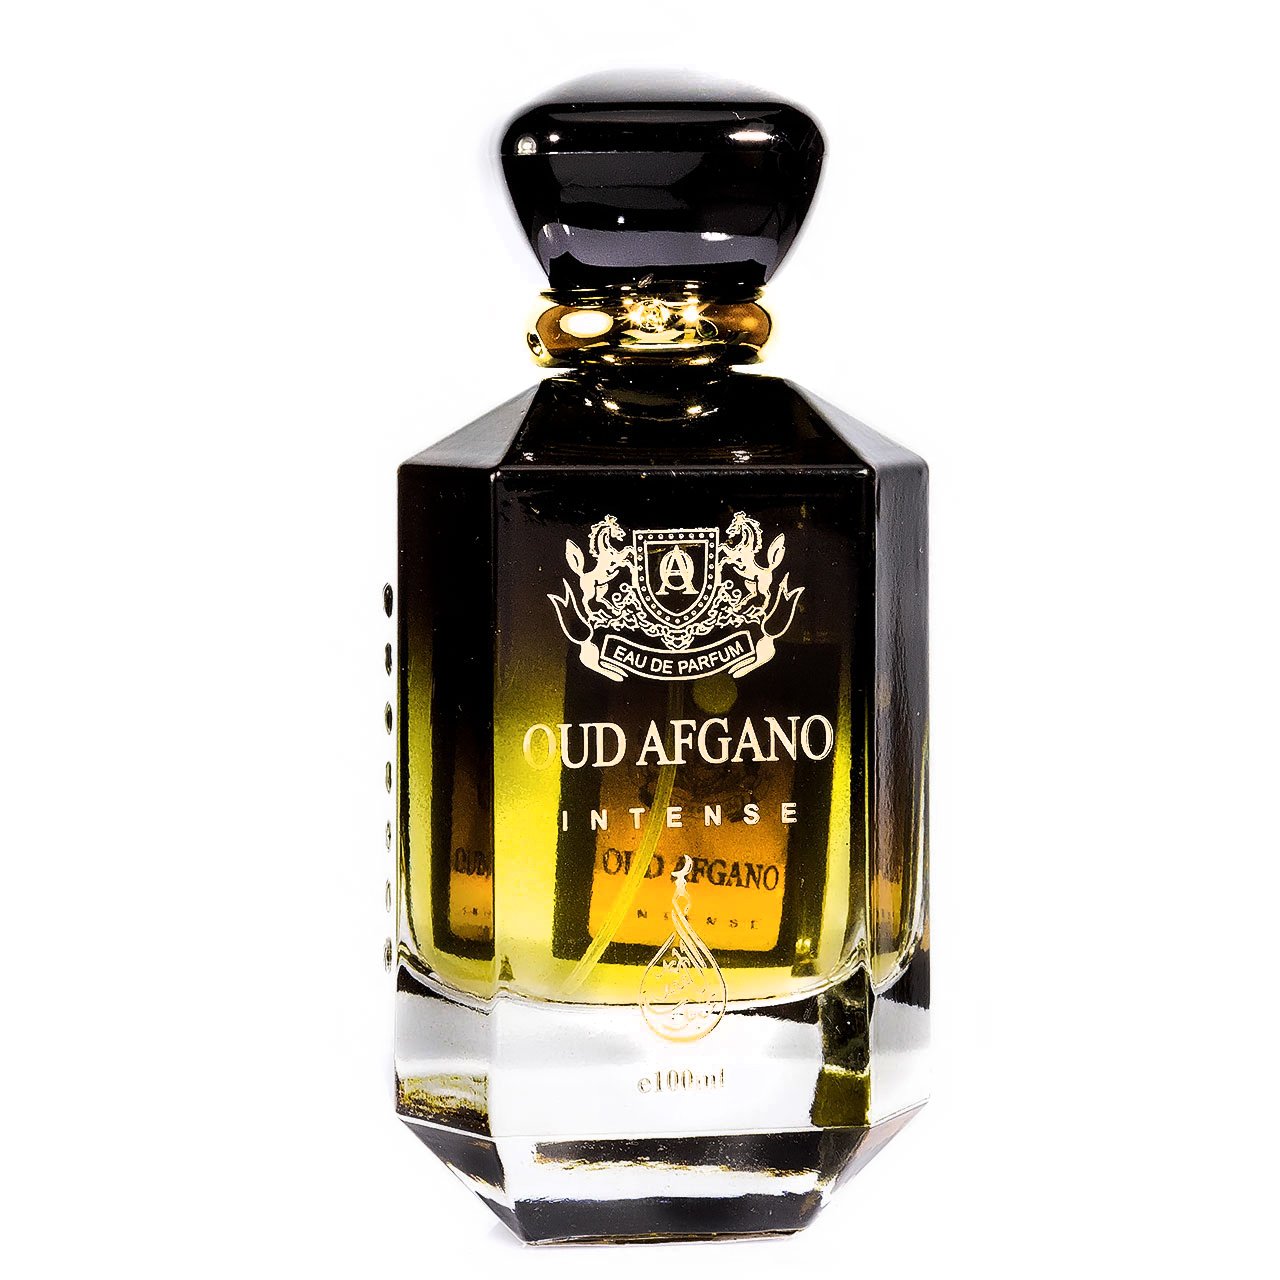 Oud Afgano Intense Eau De Parfum 100ml Value Pack of 3 